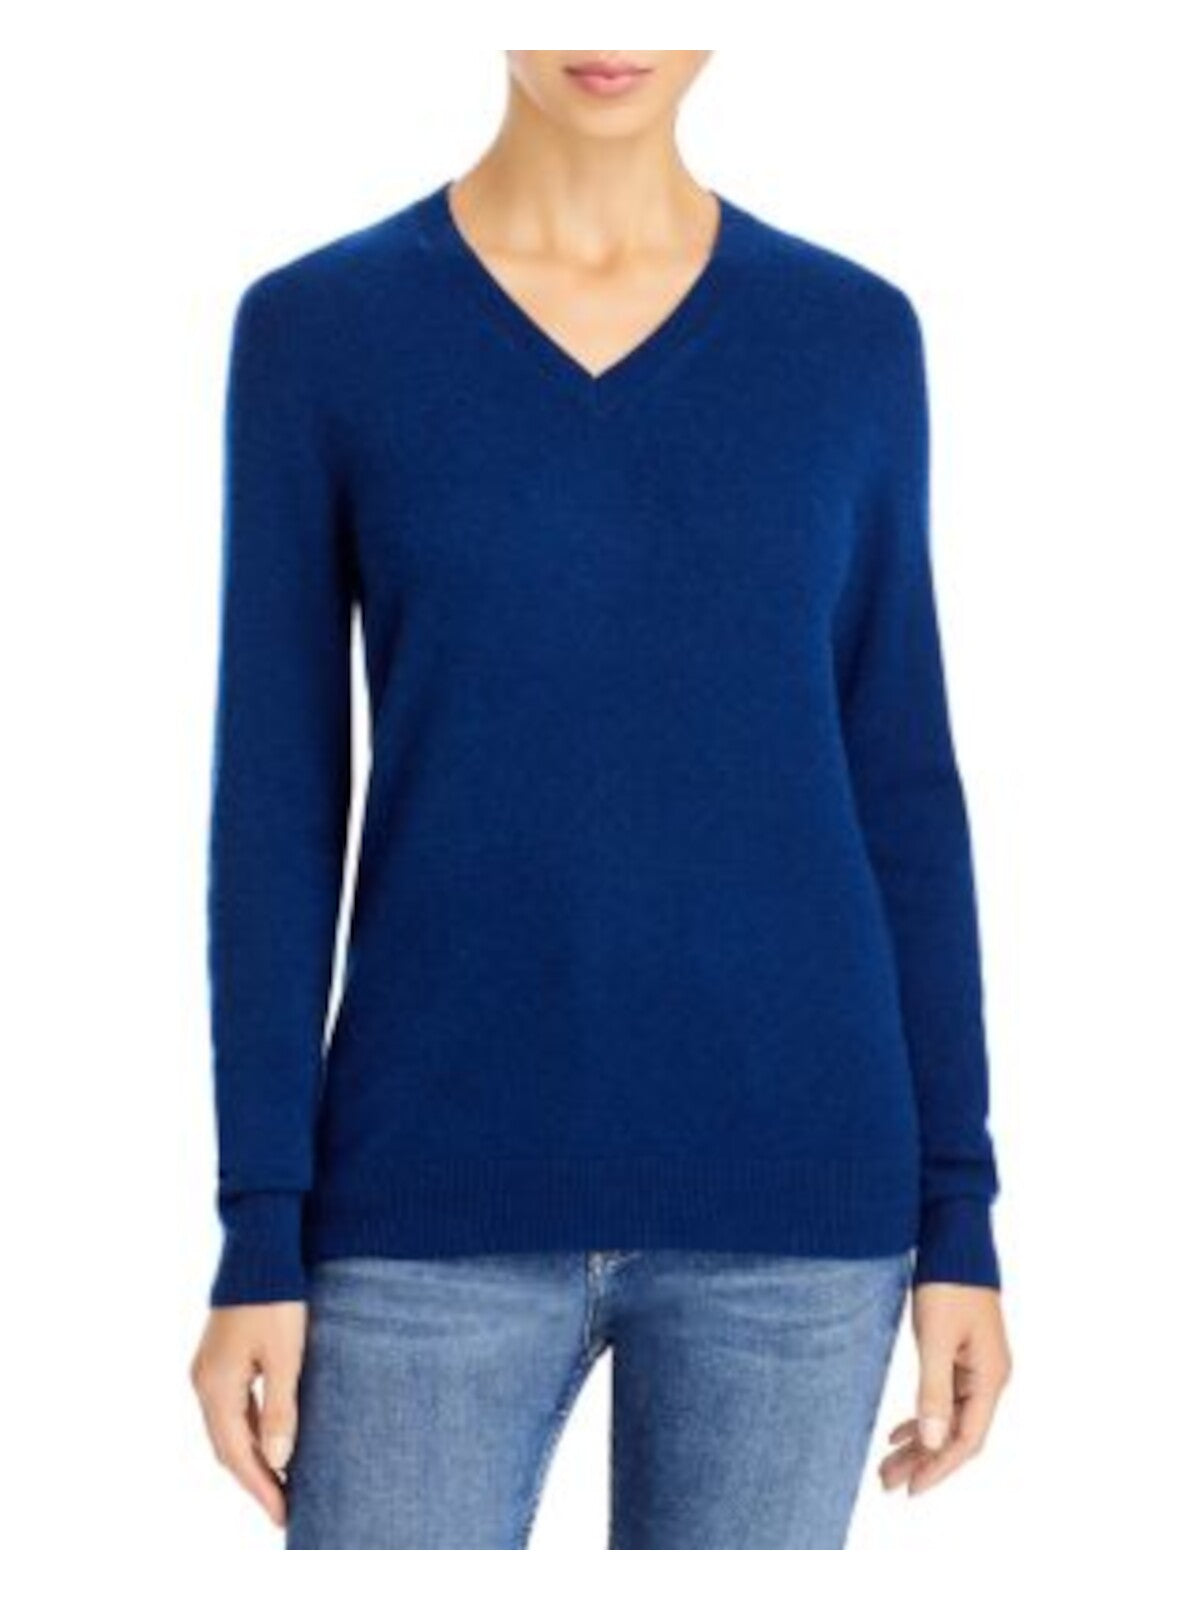 Designer Brand Womens Navy Long Sleeve V Neck Sweater S